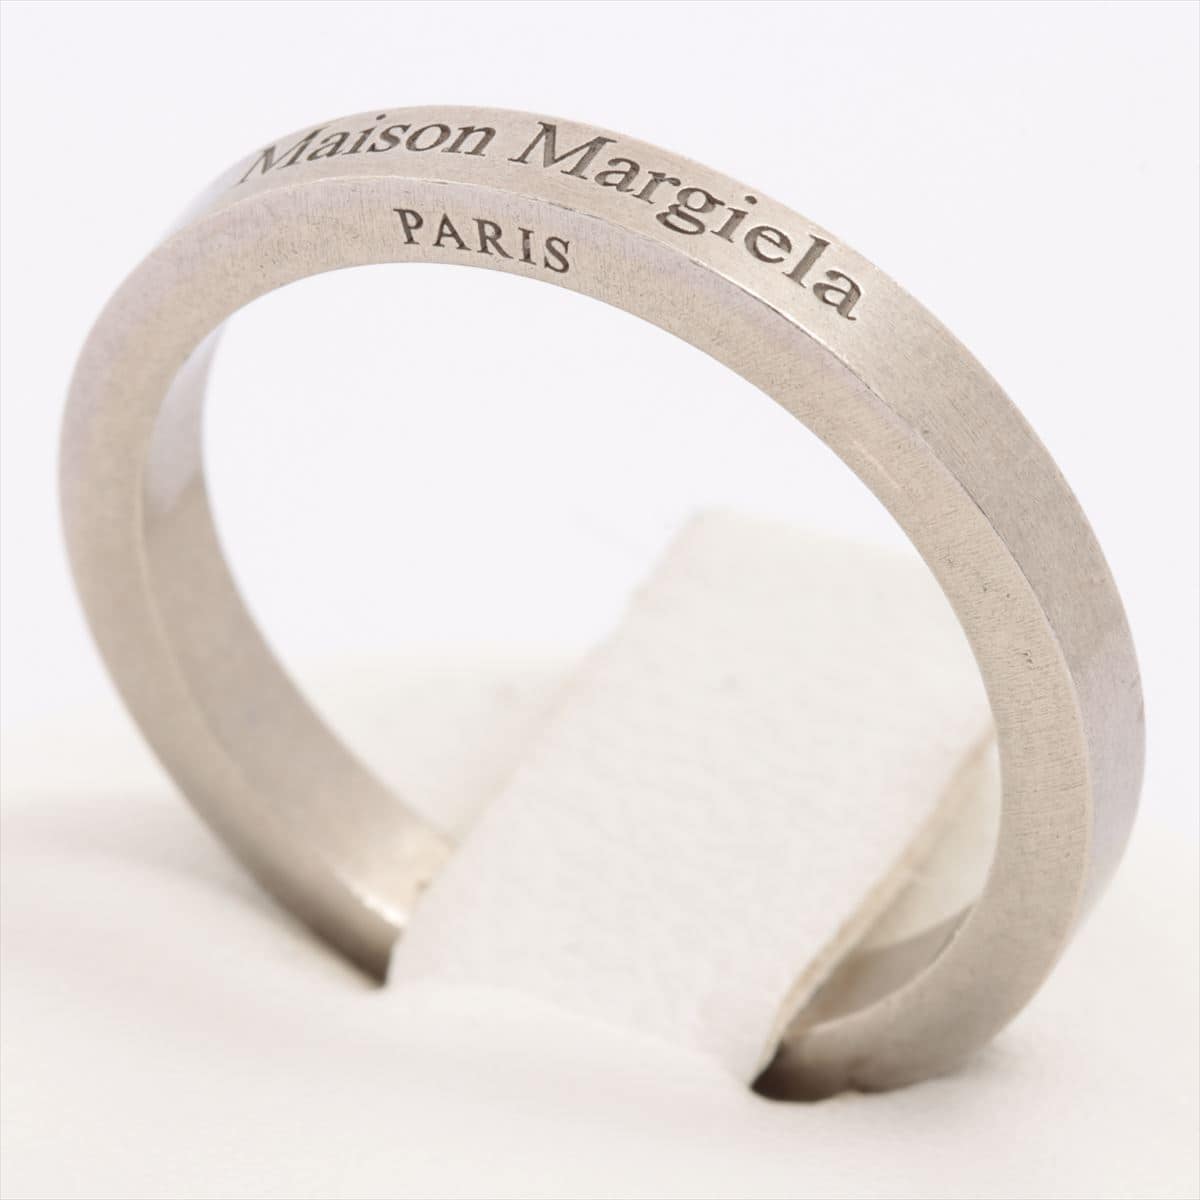 Maison Margiela Logo rings 925 3.9g